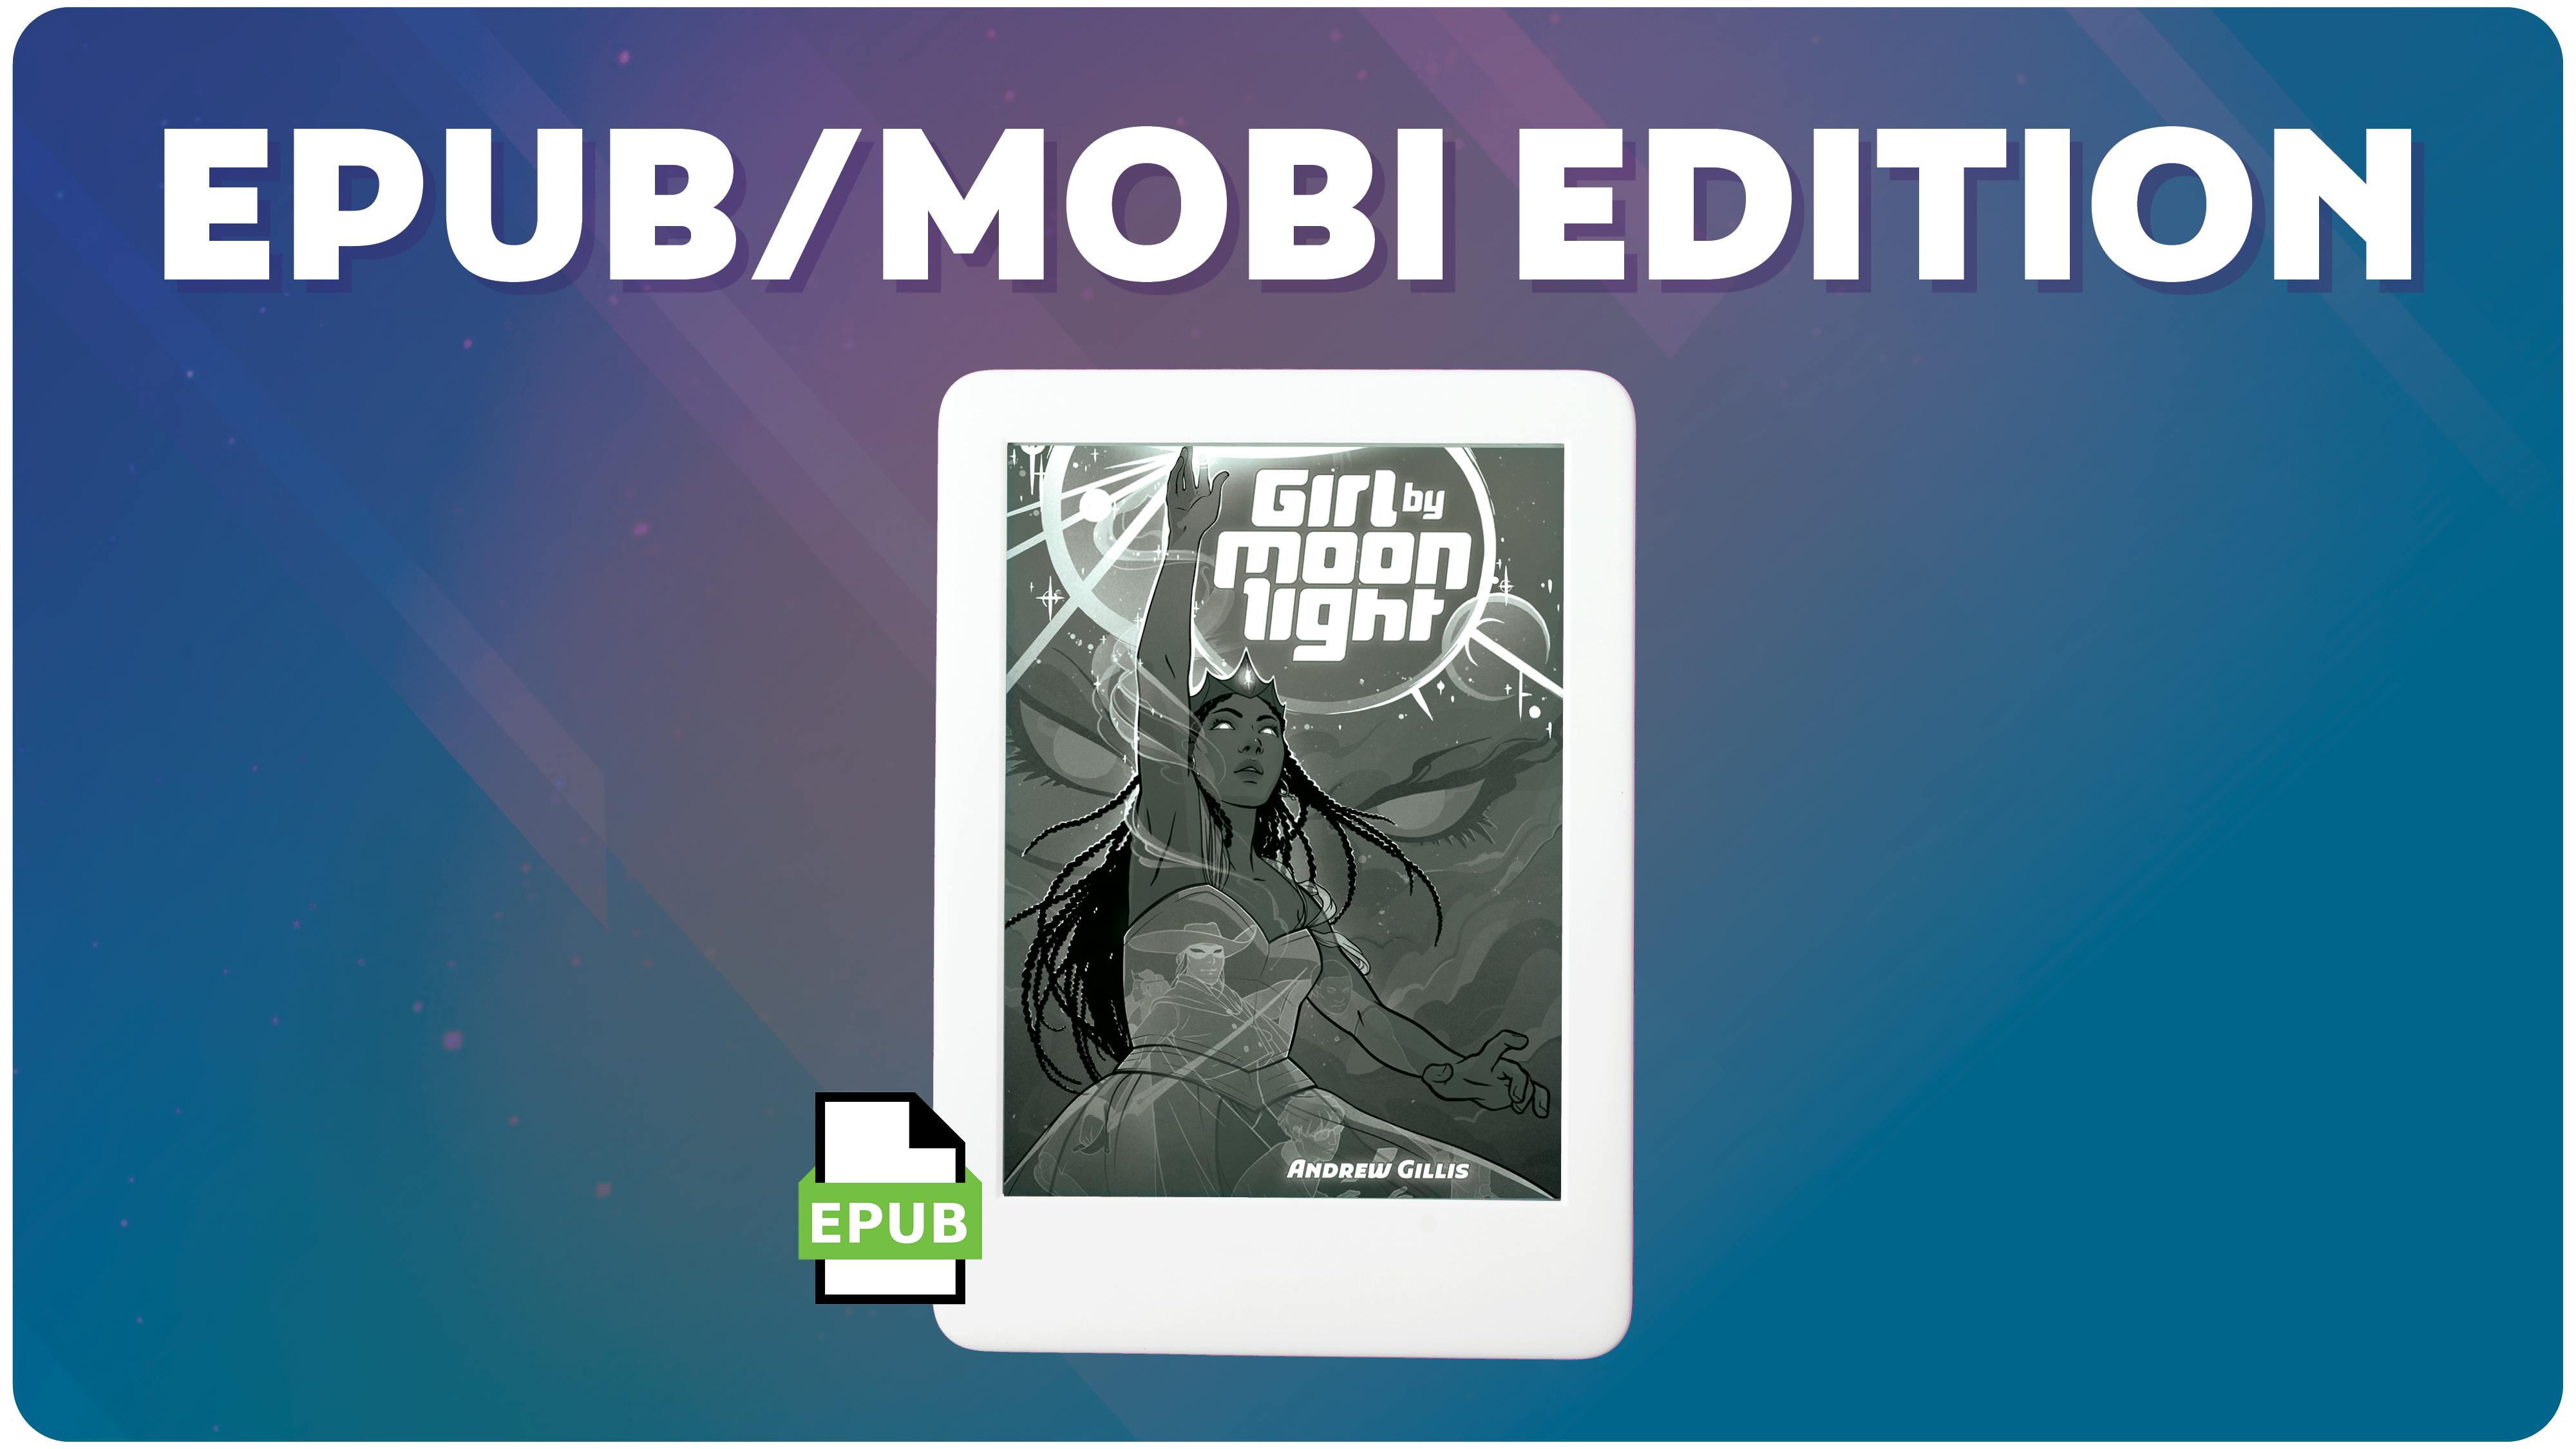 epub/mobi edition